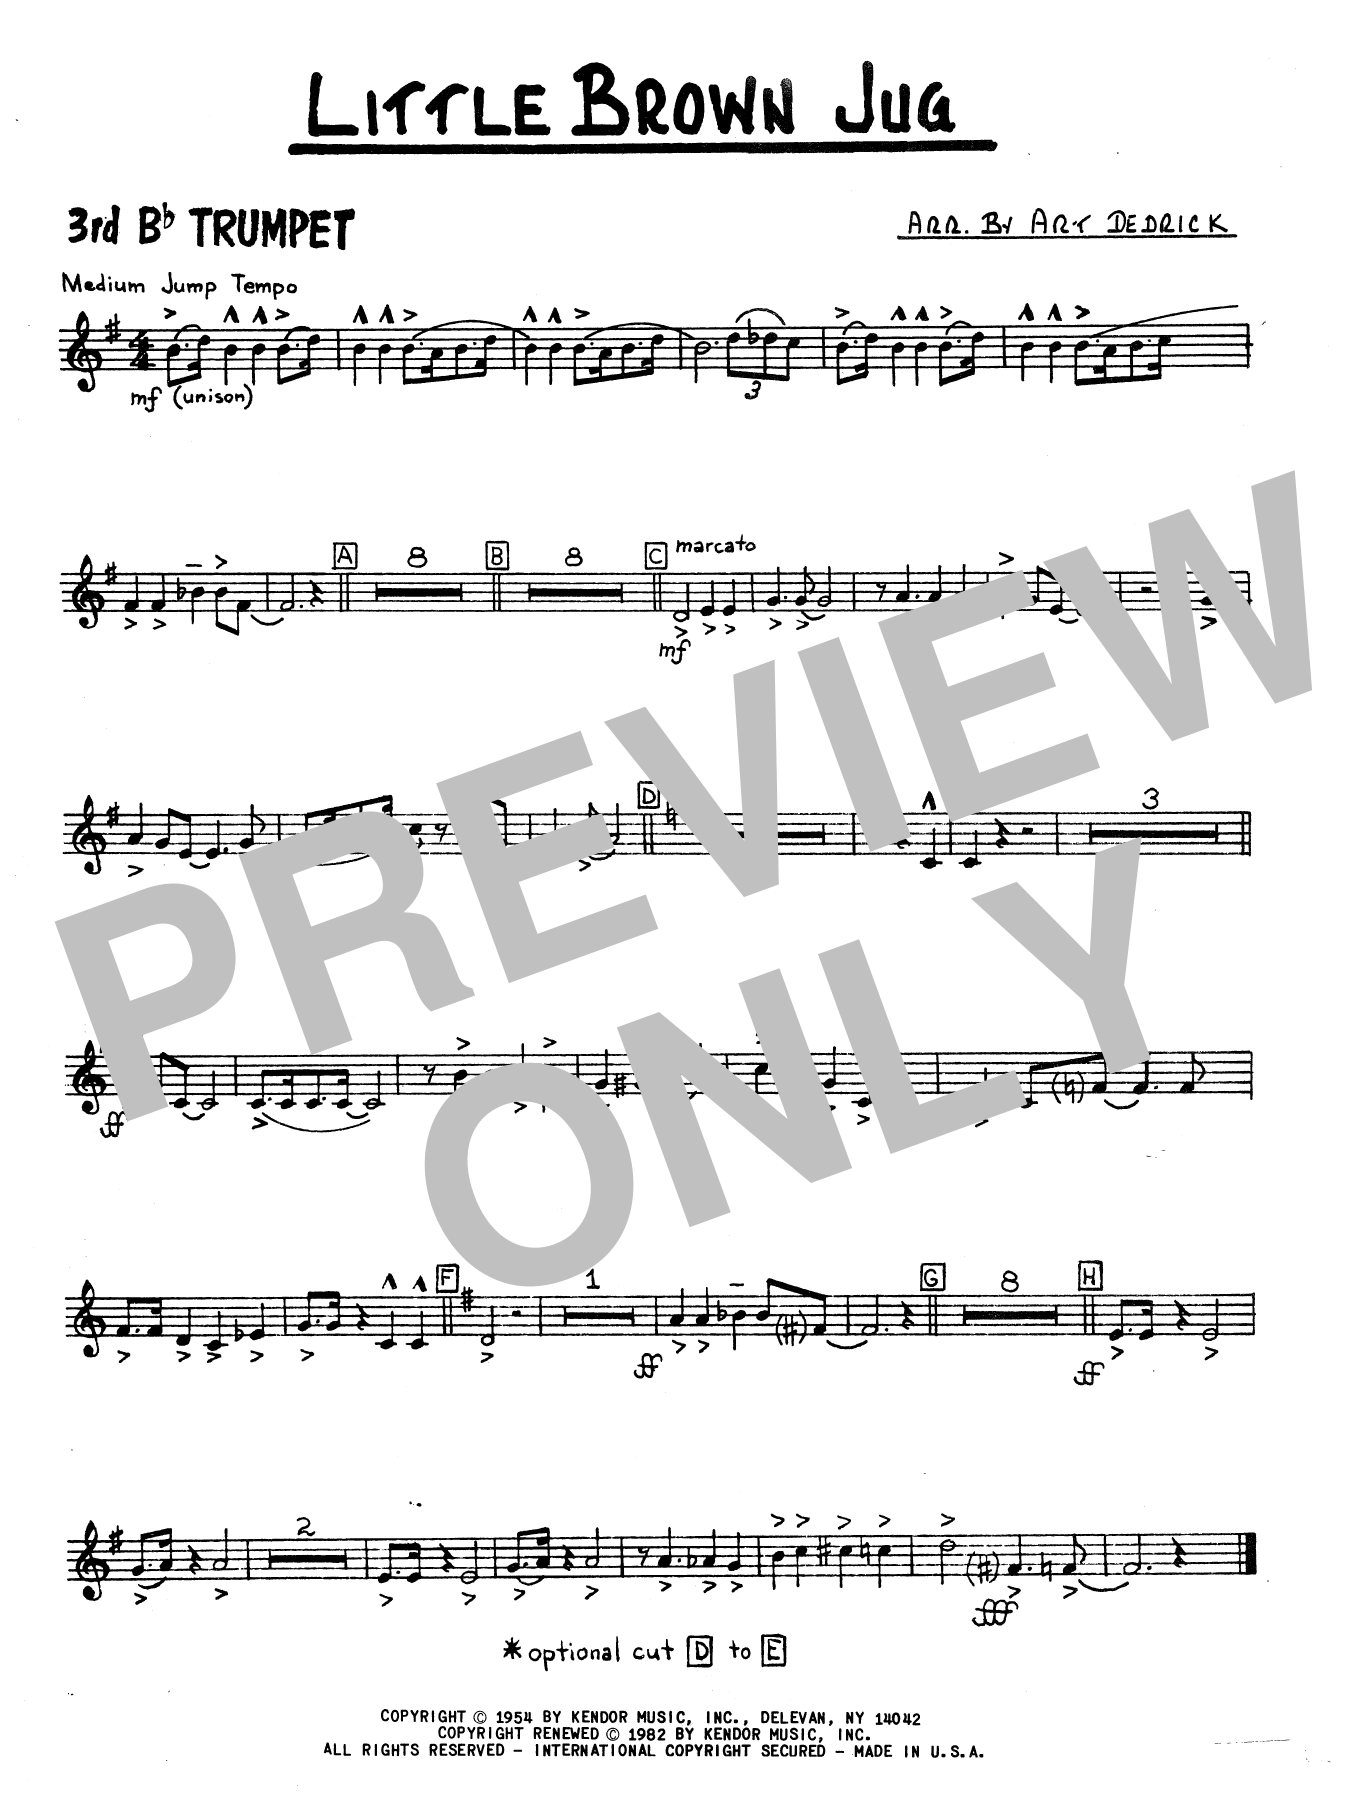 art-dedrick-little-brown-jug-3rd-bb-trumpet-sheet-music-notes